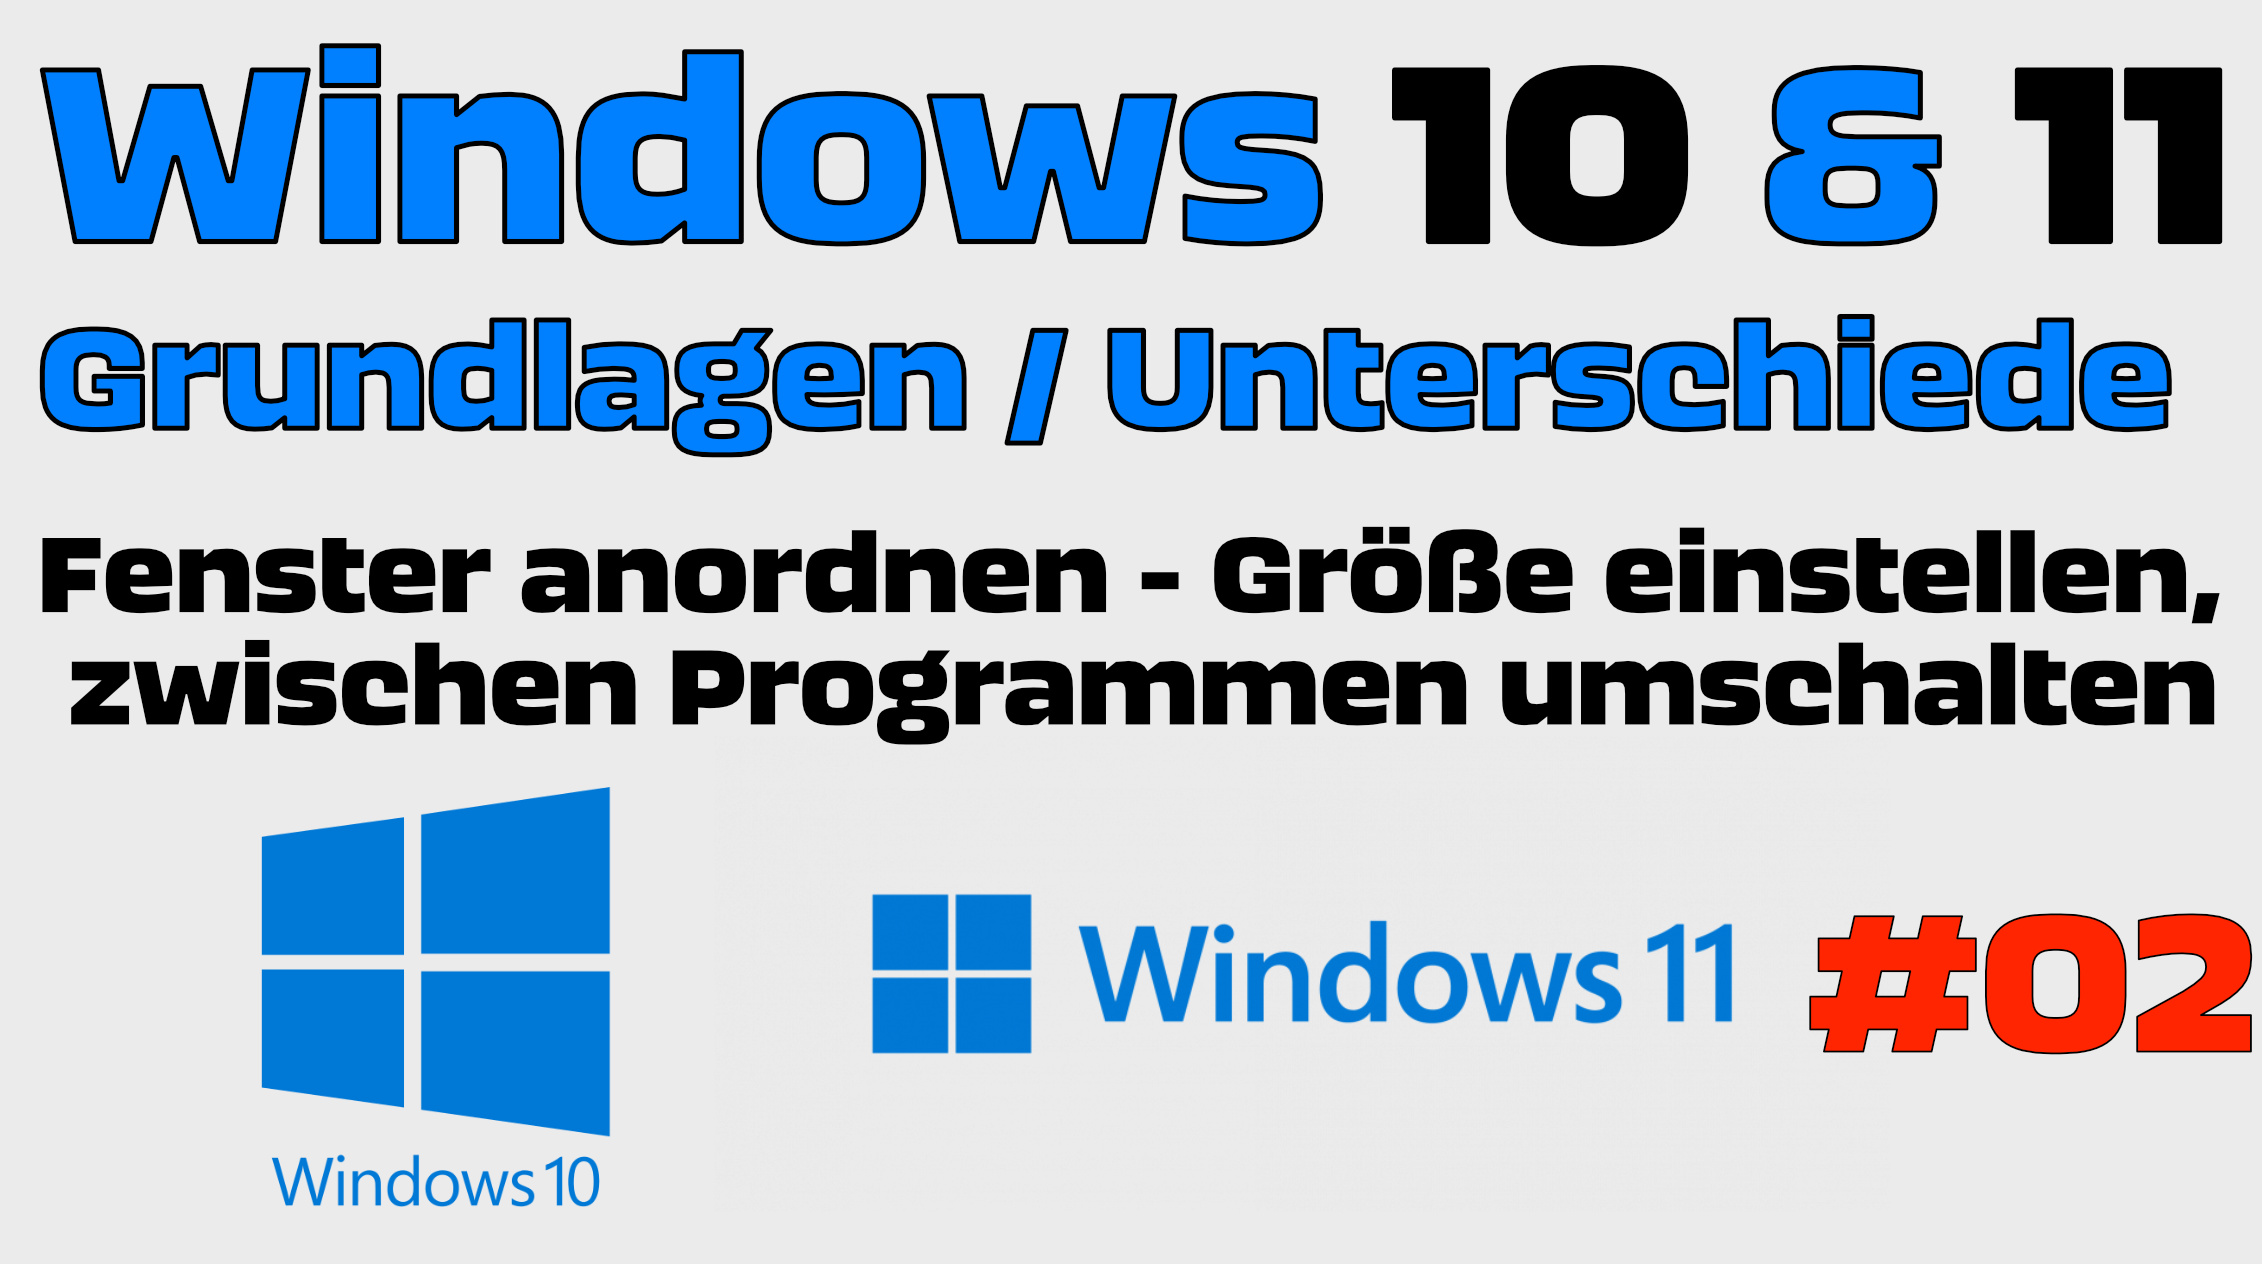 Windows 10 / 11 Fensterln